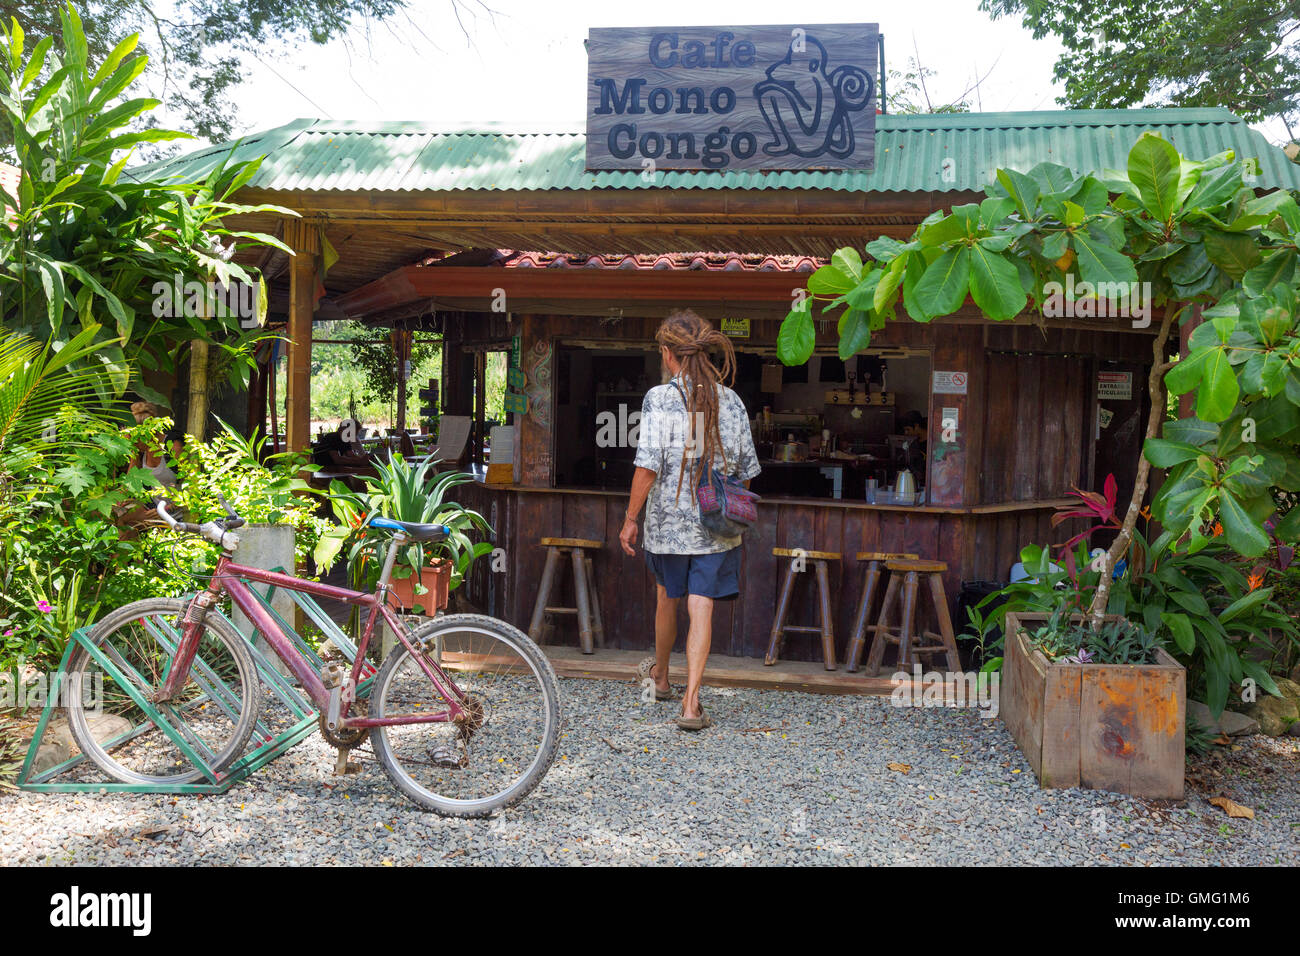 Il Cafe Mono Congo, un caffè bar nel villaggio Dominical, Costa Rica, America Latina Foto Stock